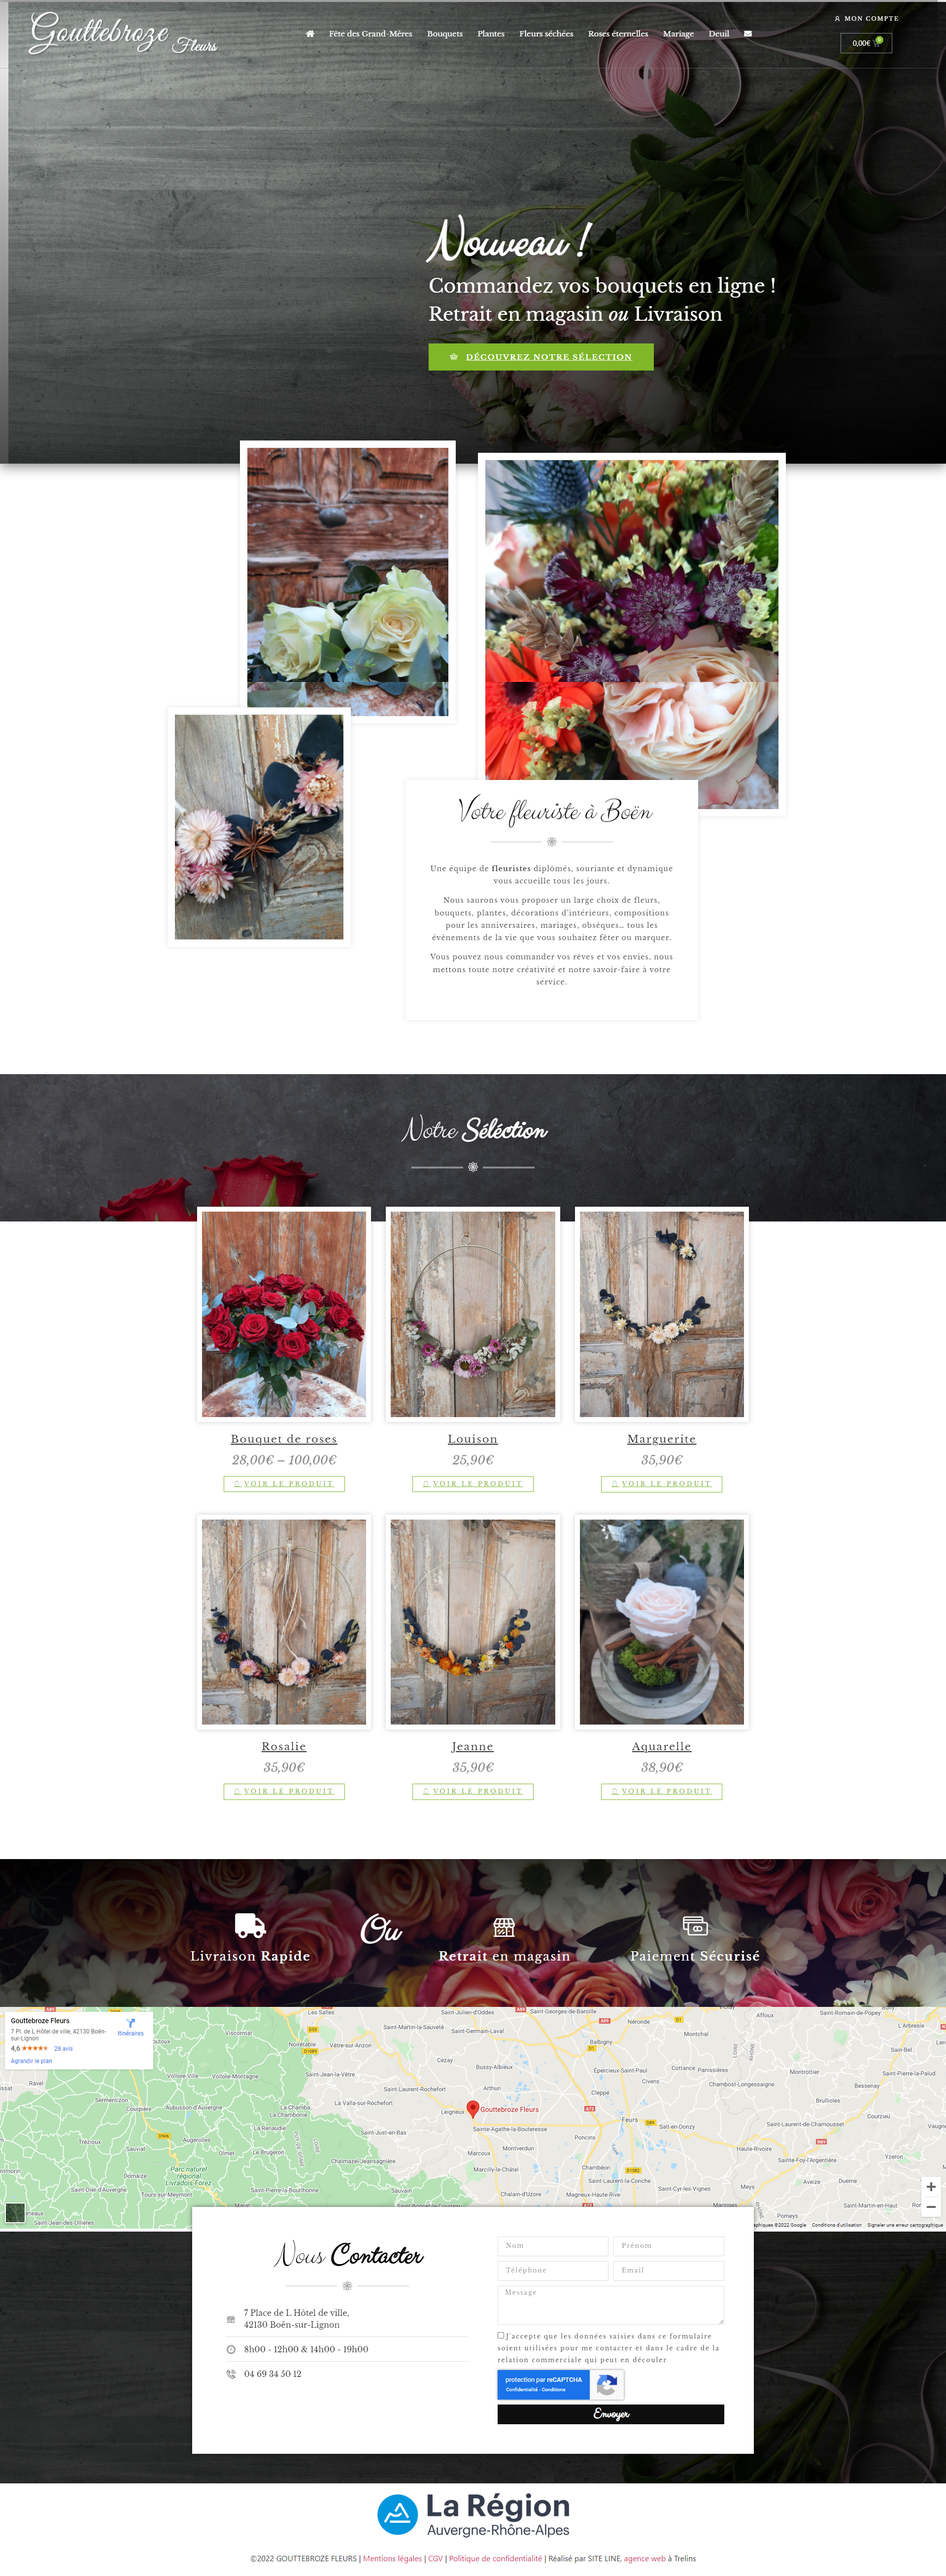 Création site de vente en ligne de fleurs, bouquets, plantes, click & collect